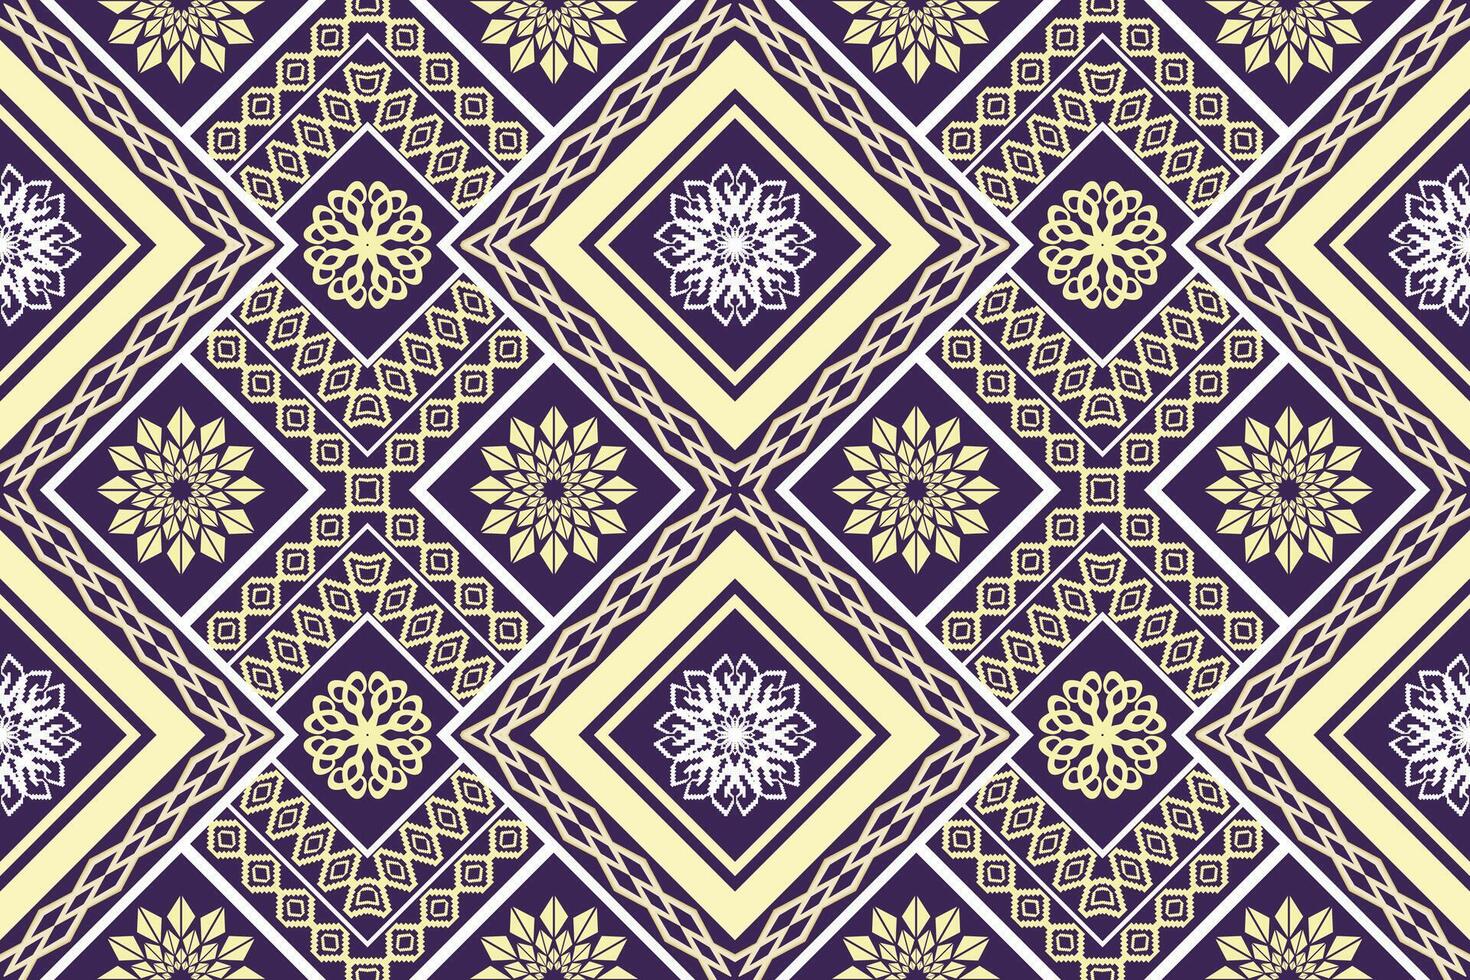 geometrisk etnisk orientalisk traditionell konst mönster.figur stam- broderi stil.design för bakgrund, tapeter, kläder, inslagning, tyg, element, vektor illustration.